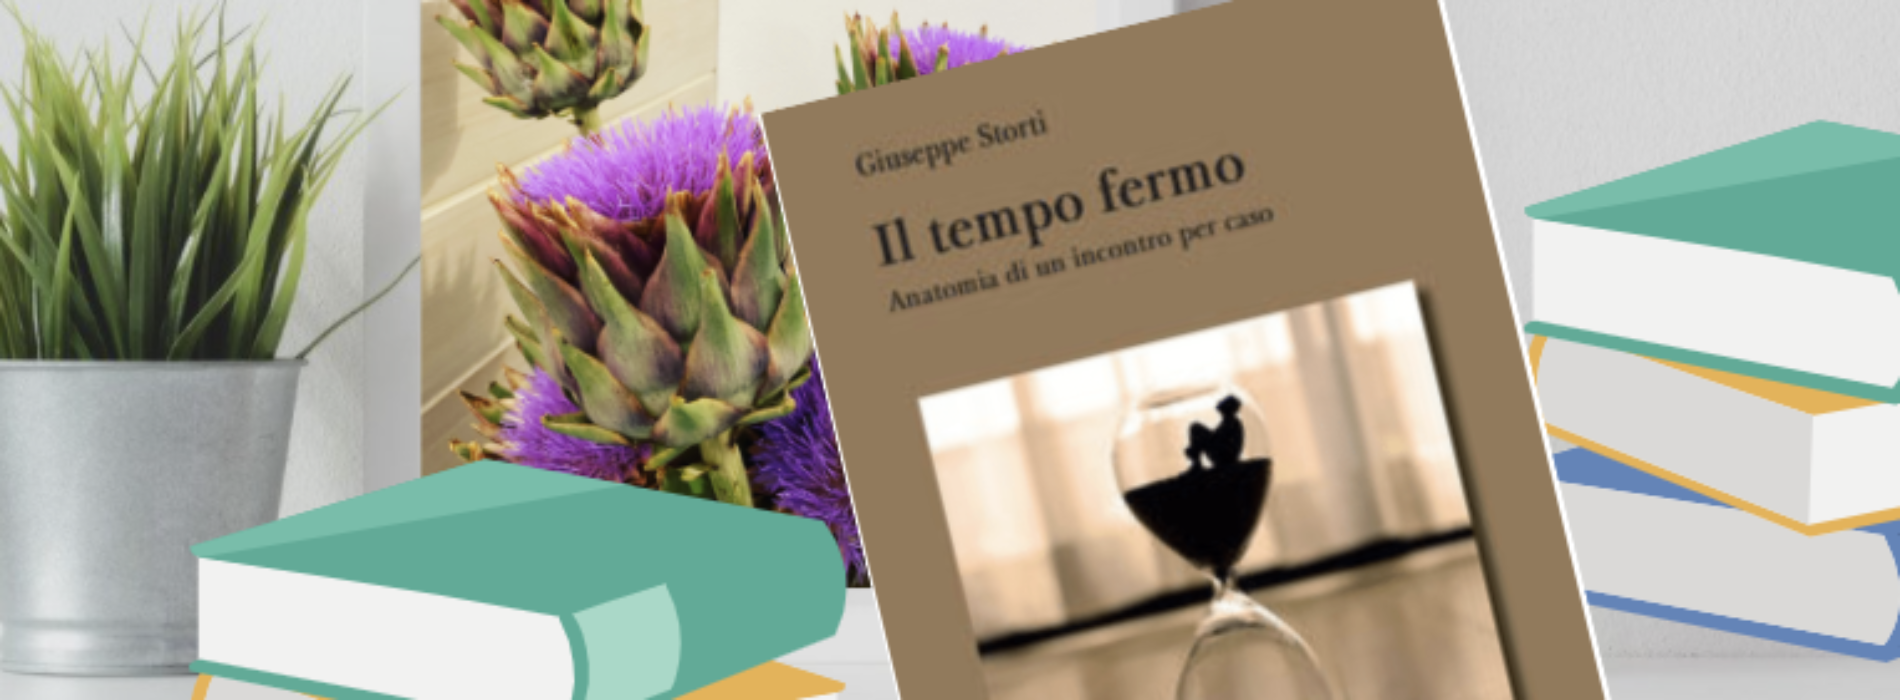 Il tempo fermo, il romanzo di Giuseppe Storti va online